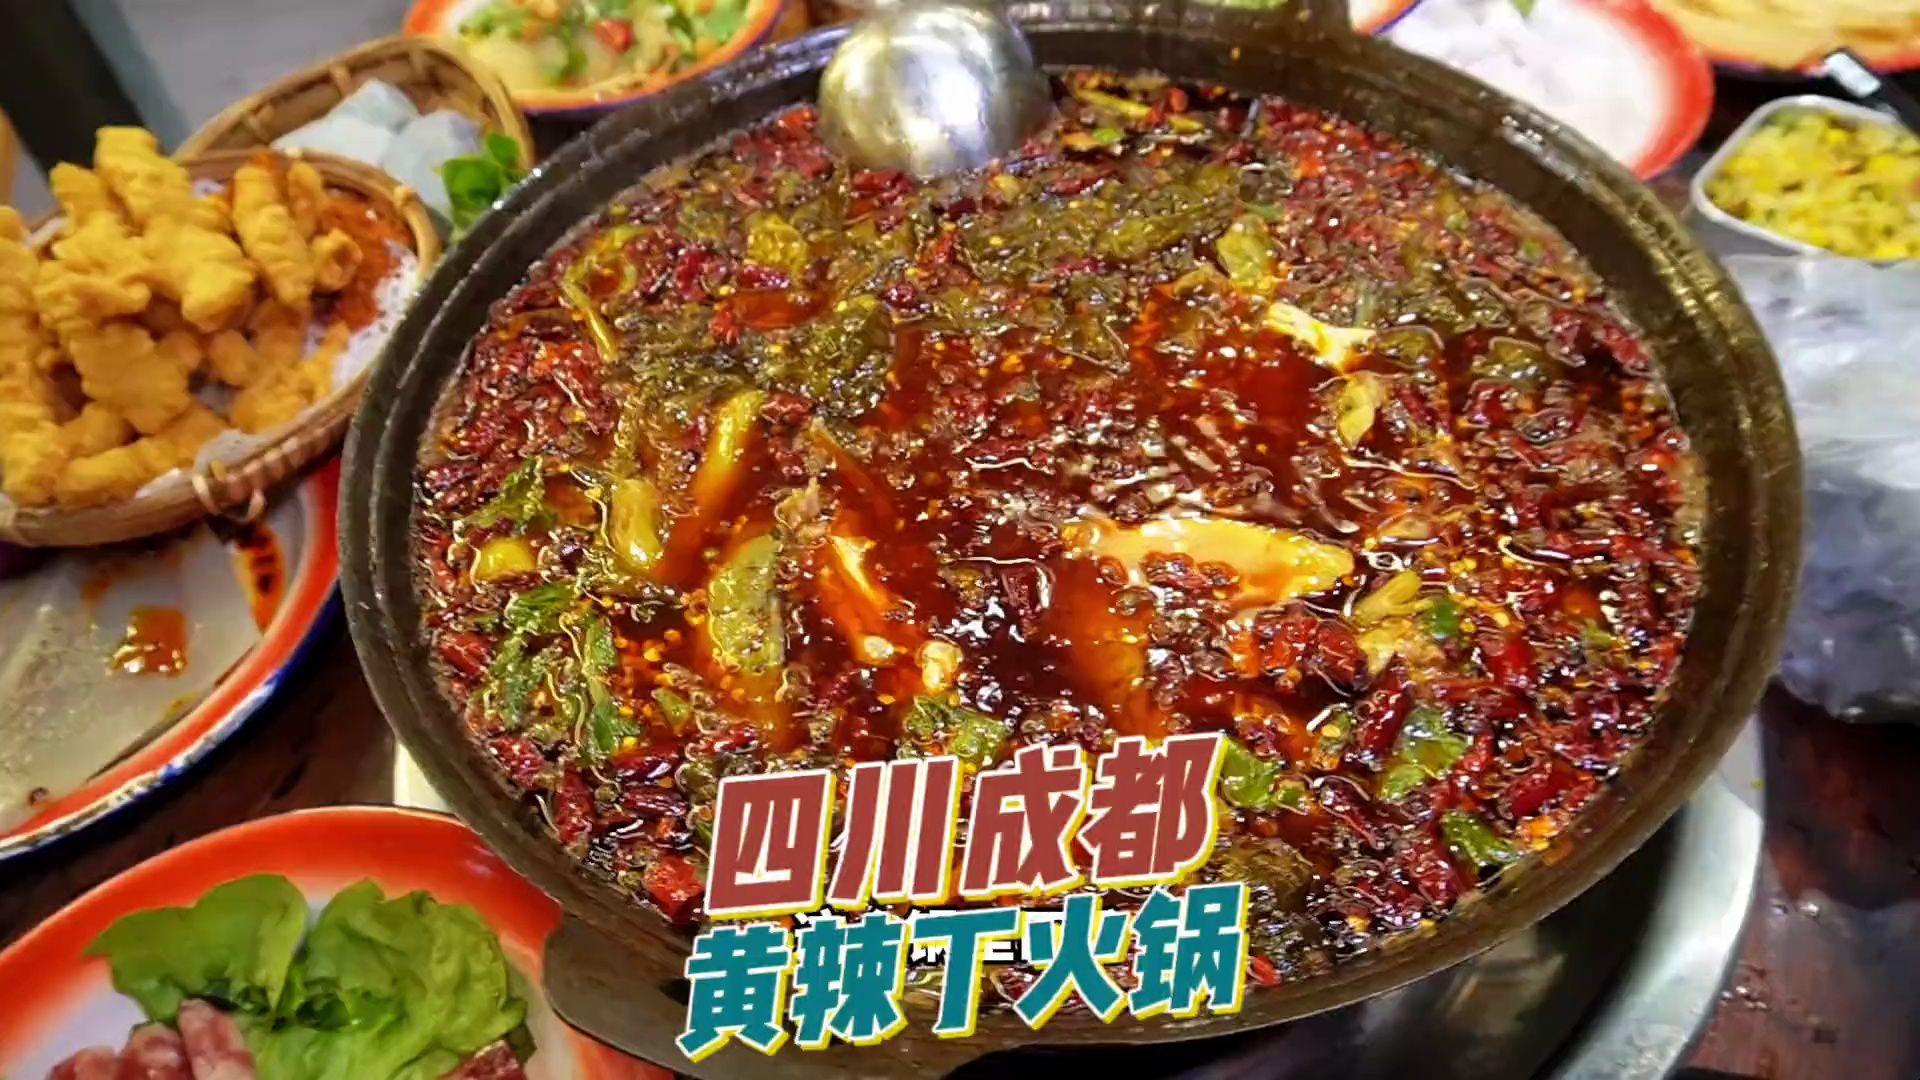 成都竟然有这么好吃的的黄辣丁鱼火锅 现炒锅底太香了